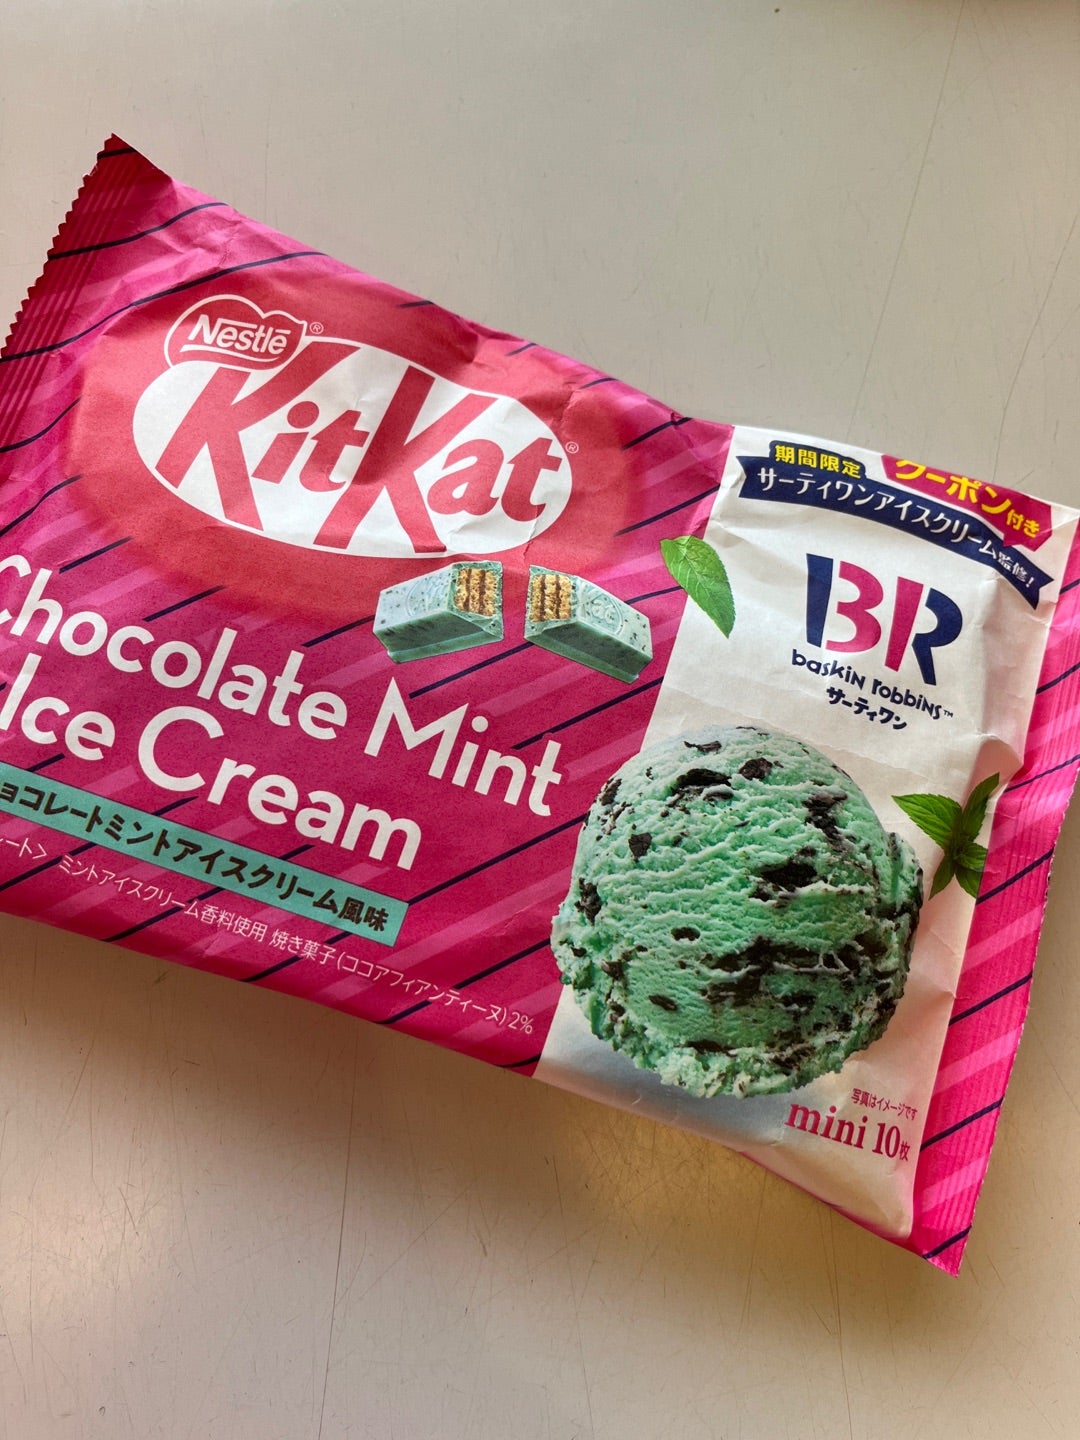 蒸し暑い日に、キットカット チョコレートミントアイスクリーム風味 を